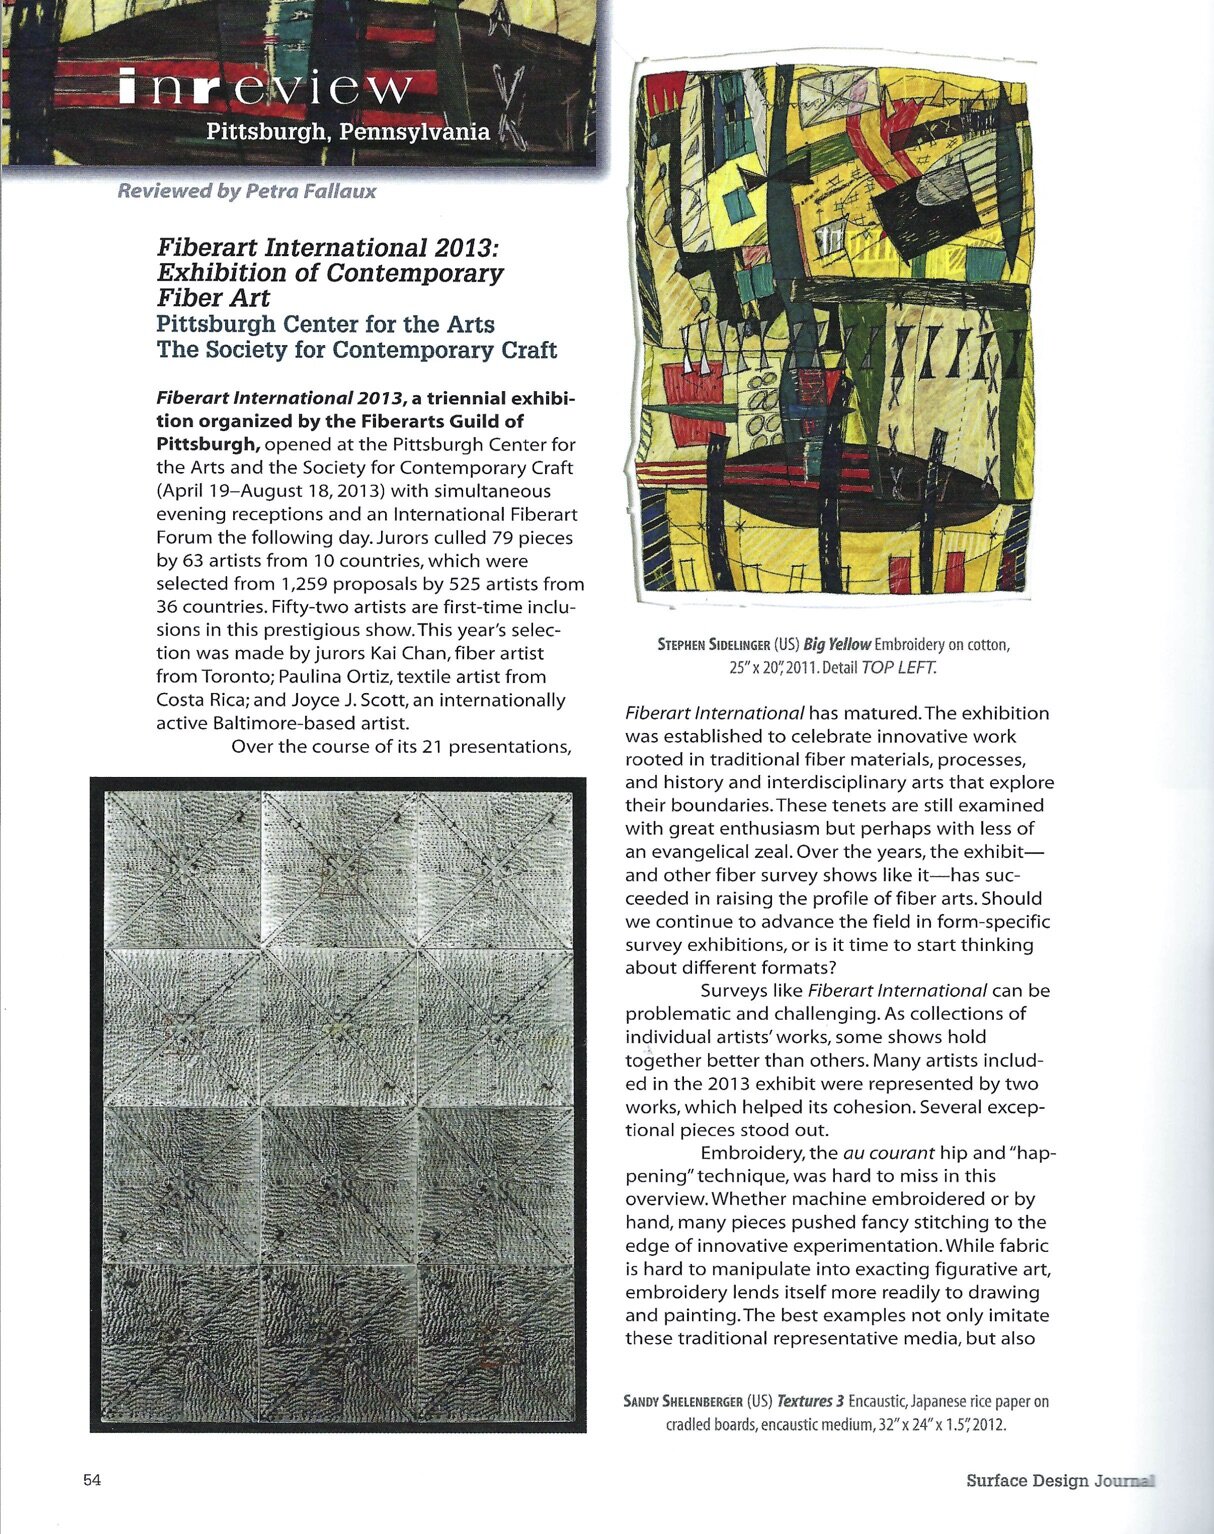 1Review of Fiberart International'13 Surface Design Journal.jpg